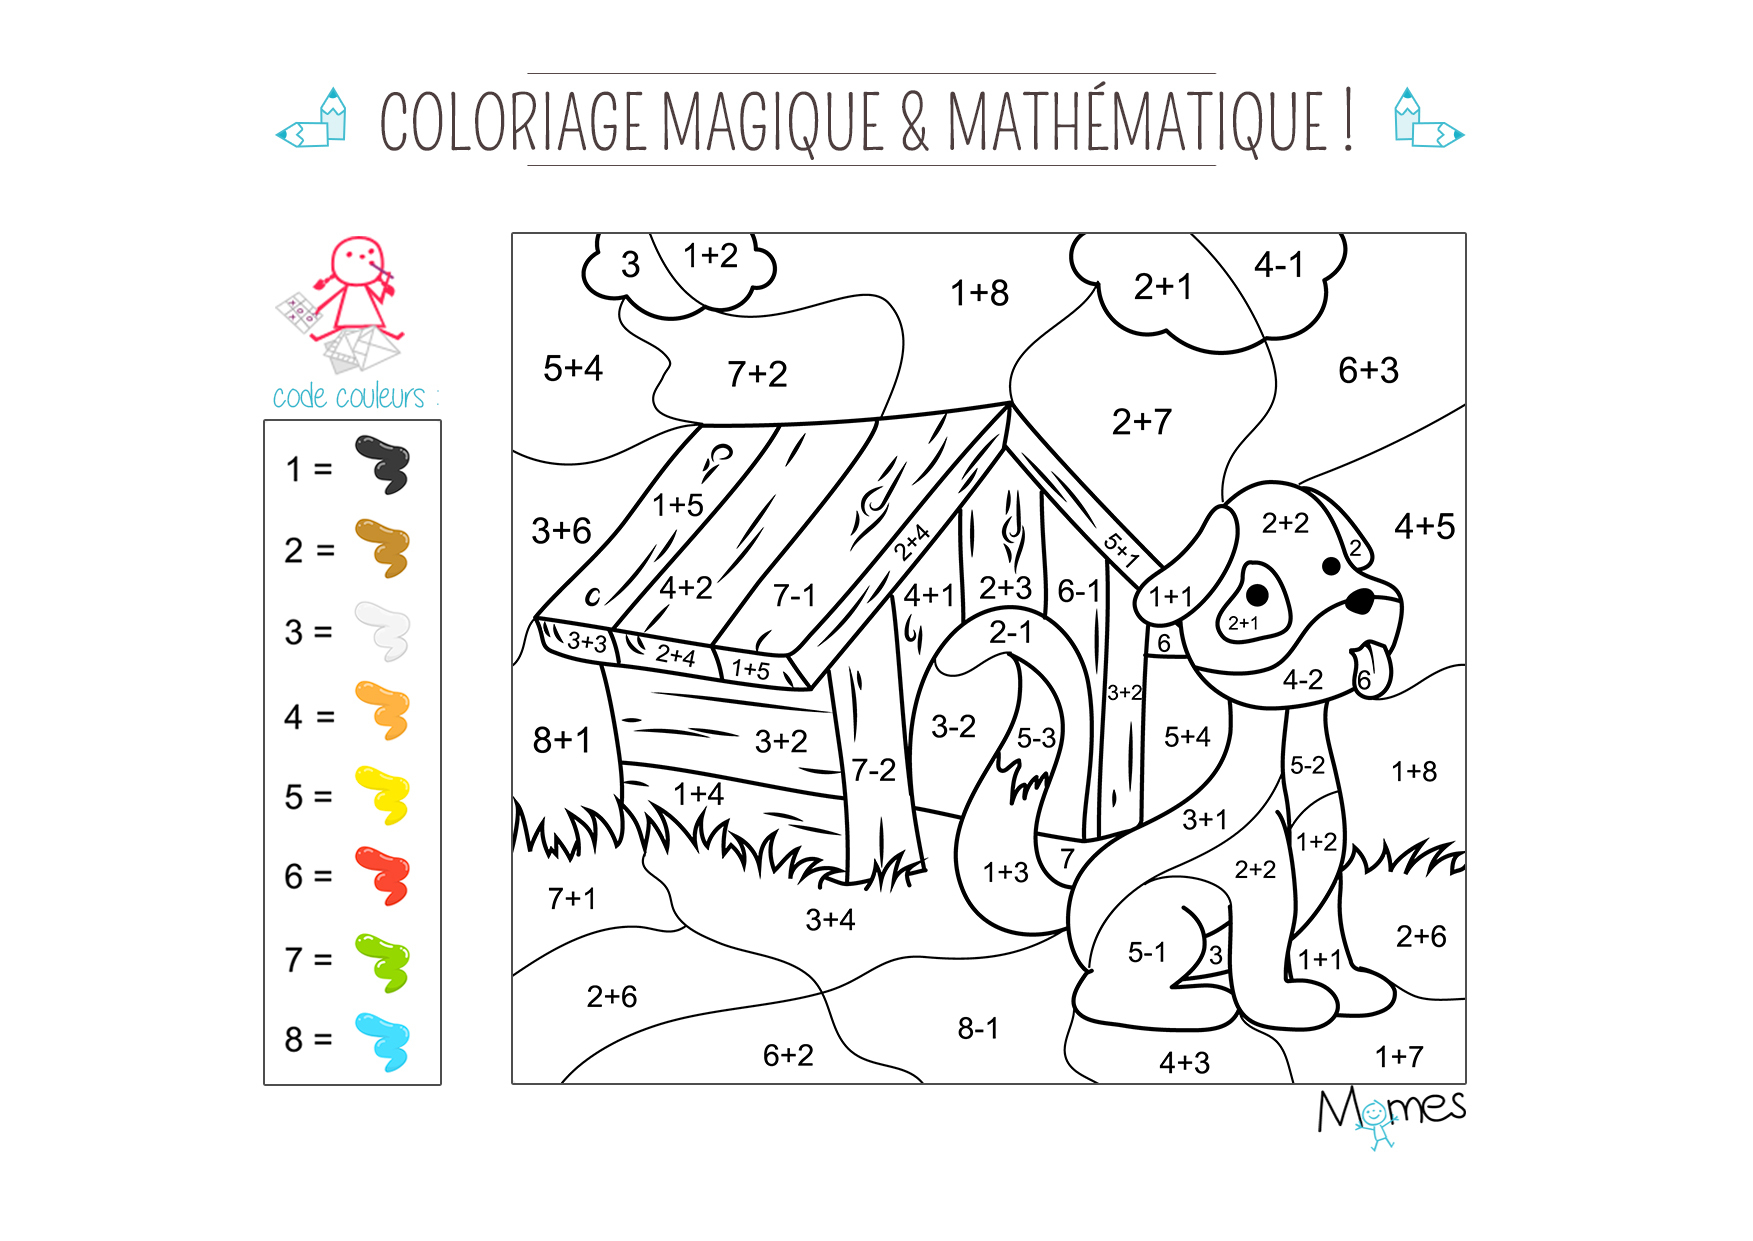 Coloriage Magique Et Mathématique : Le Chien - Momes à Coloriage Magique Pour Enfant 